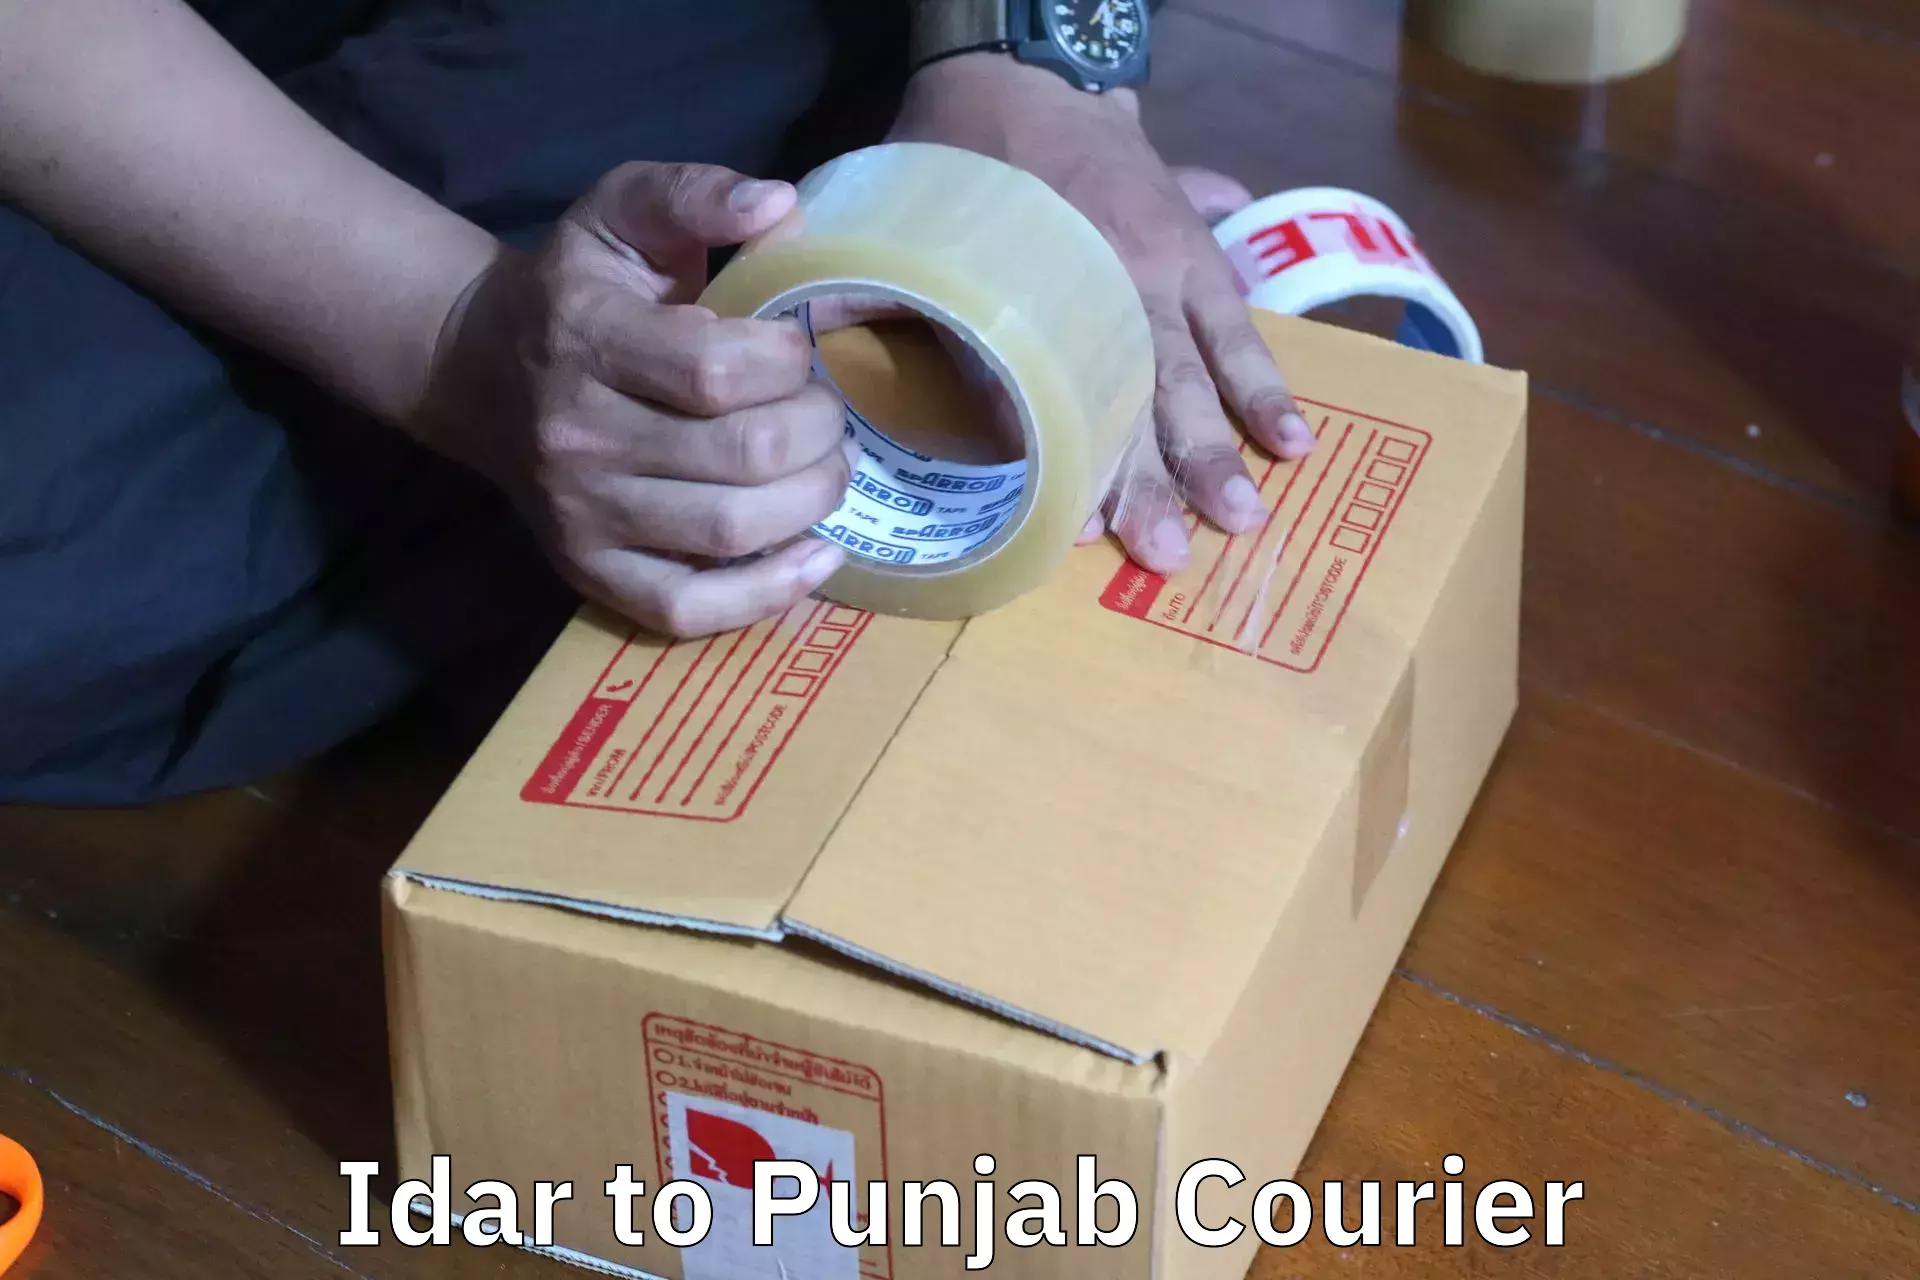 Furniture moving experts Idar to Punjab